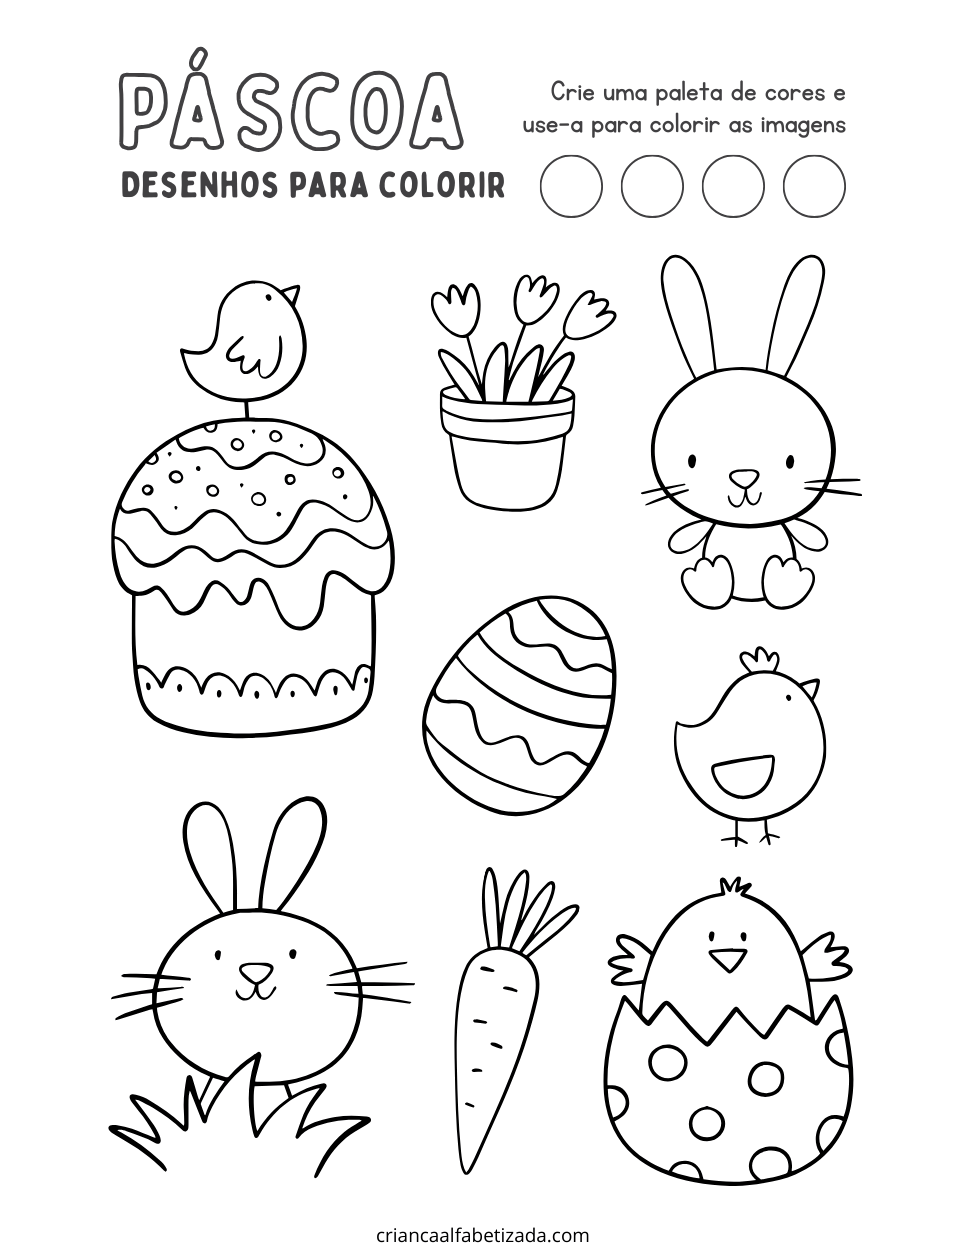 Atividades de desenhos para Páscoa, desenhar ovos